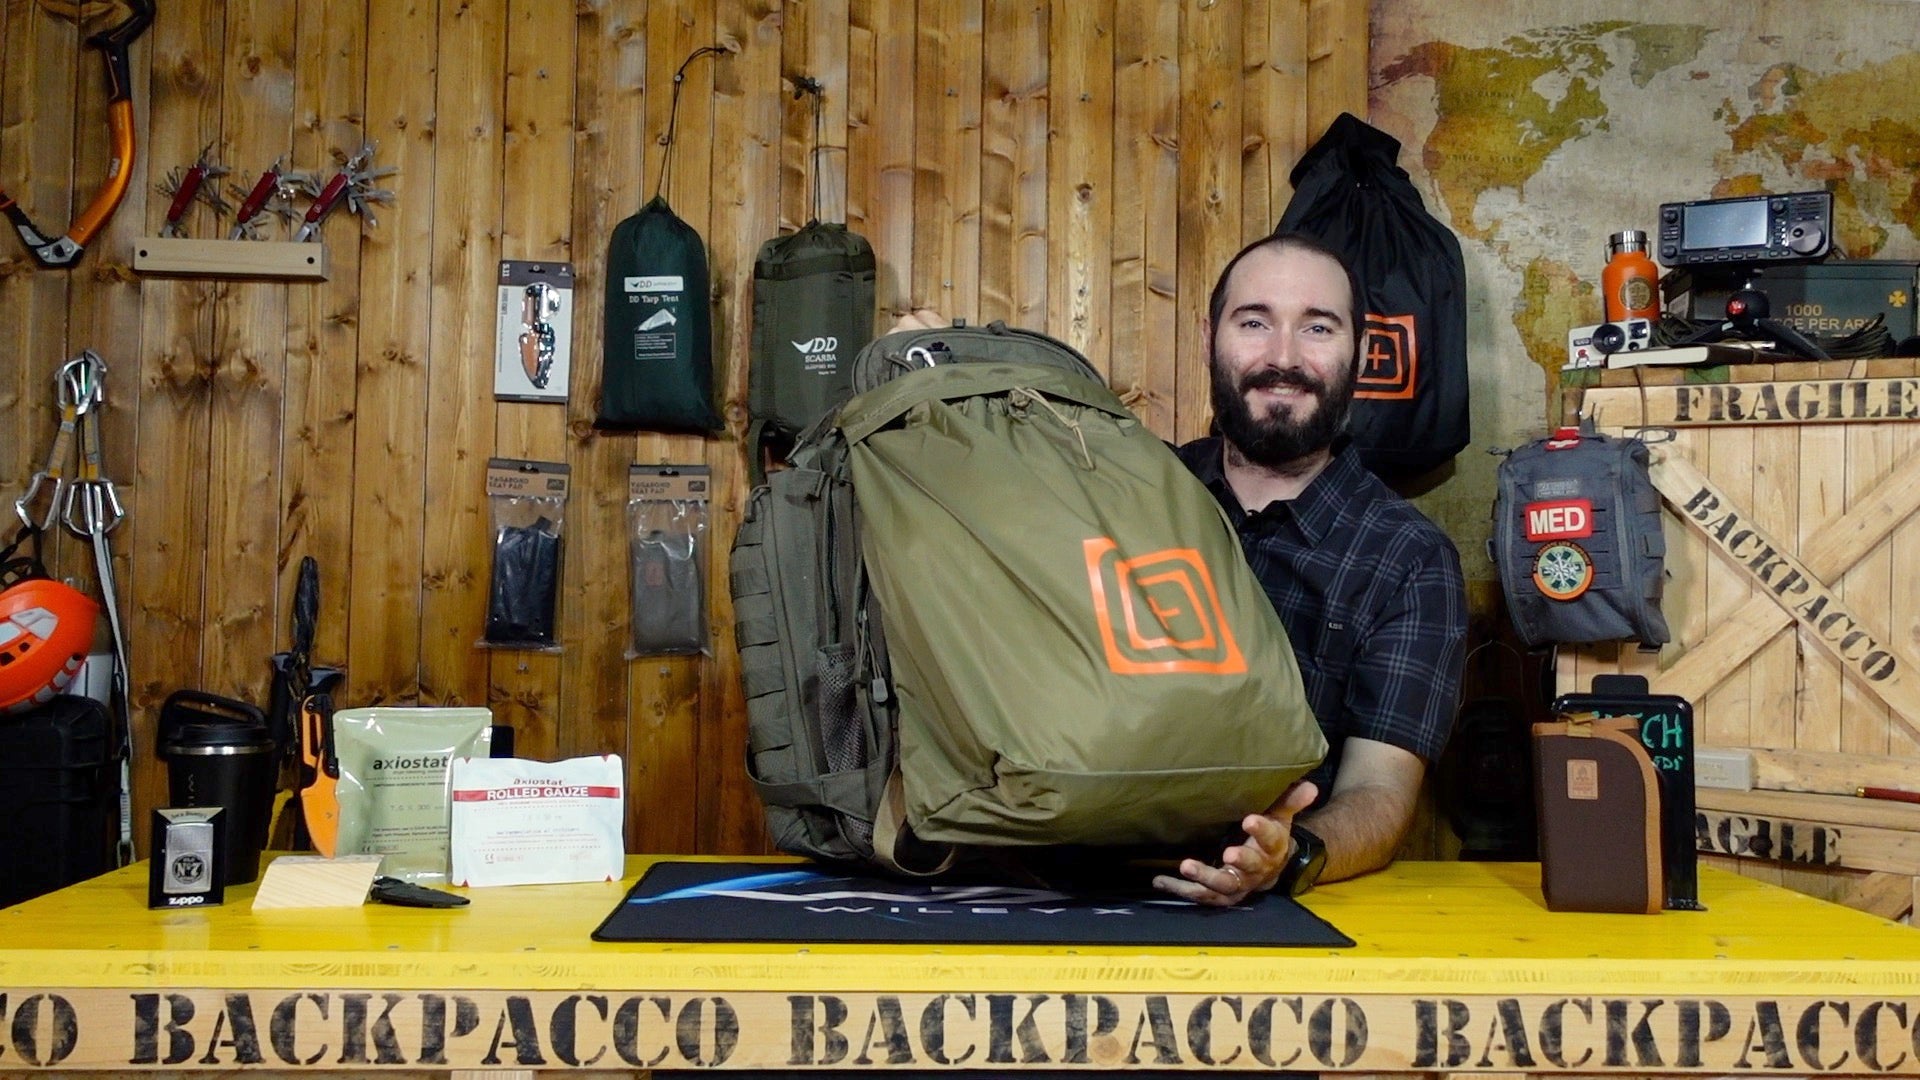 Paolo di Backpacco spiega il rapid excursion pack di 5.11